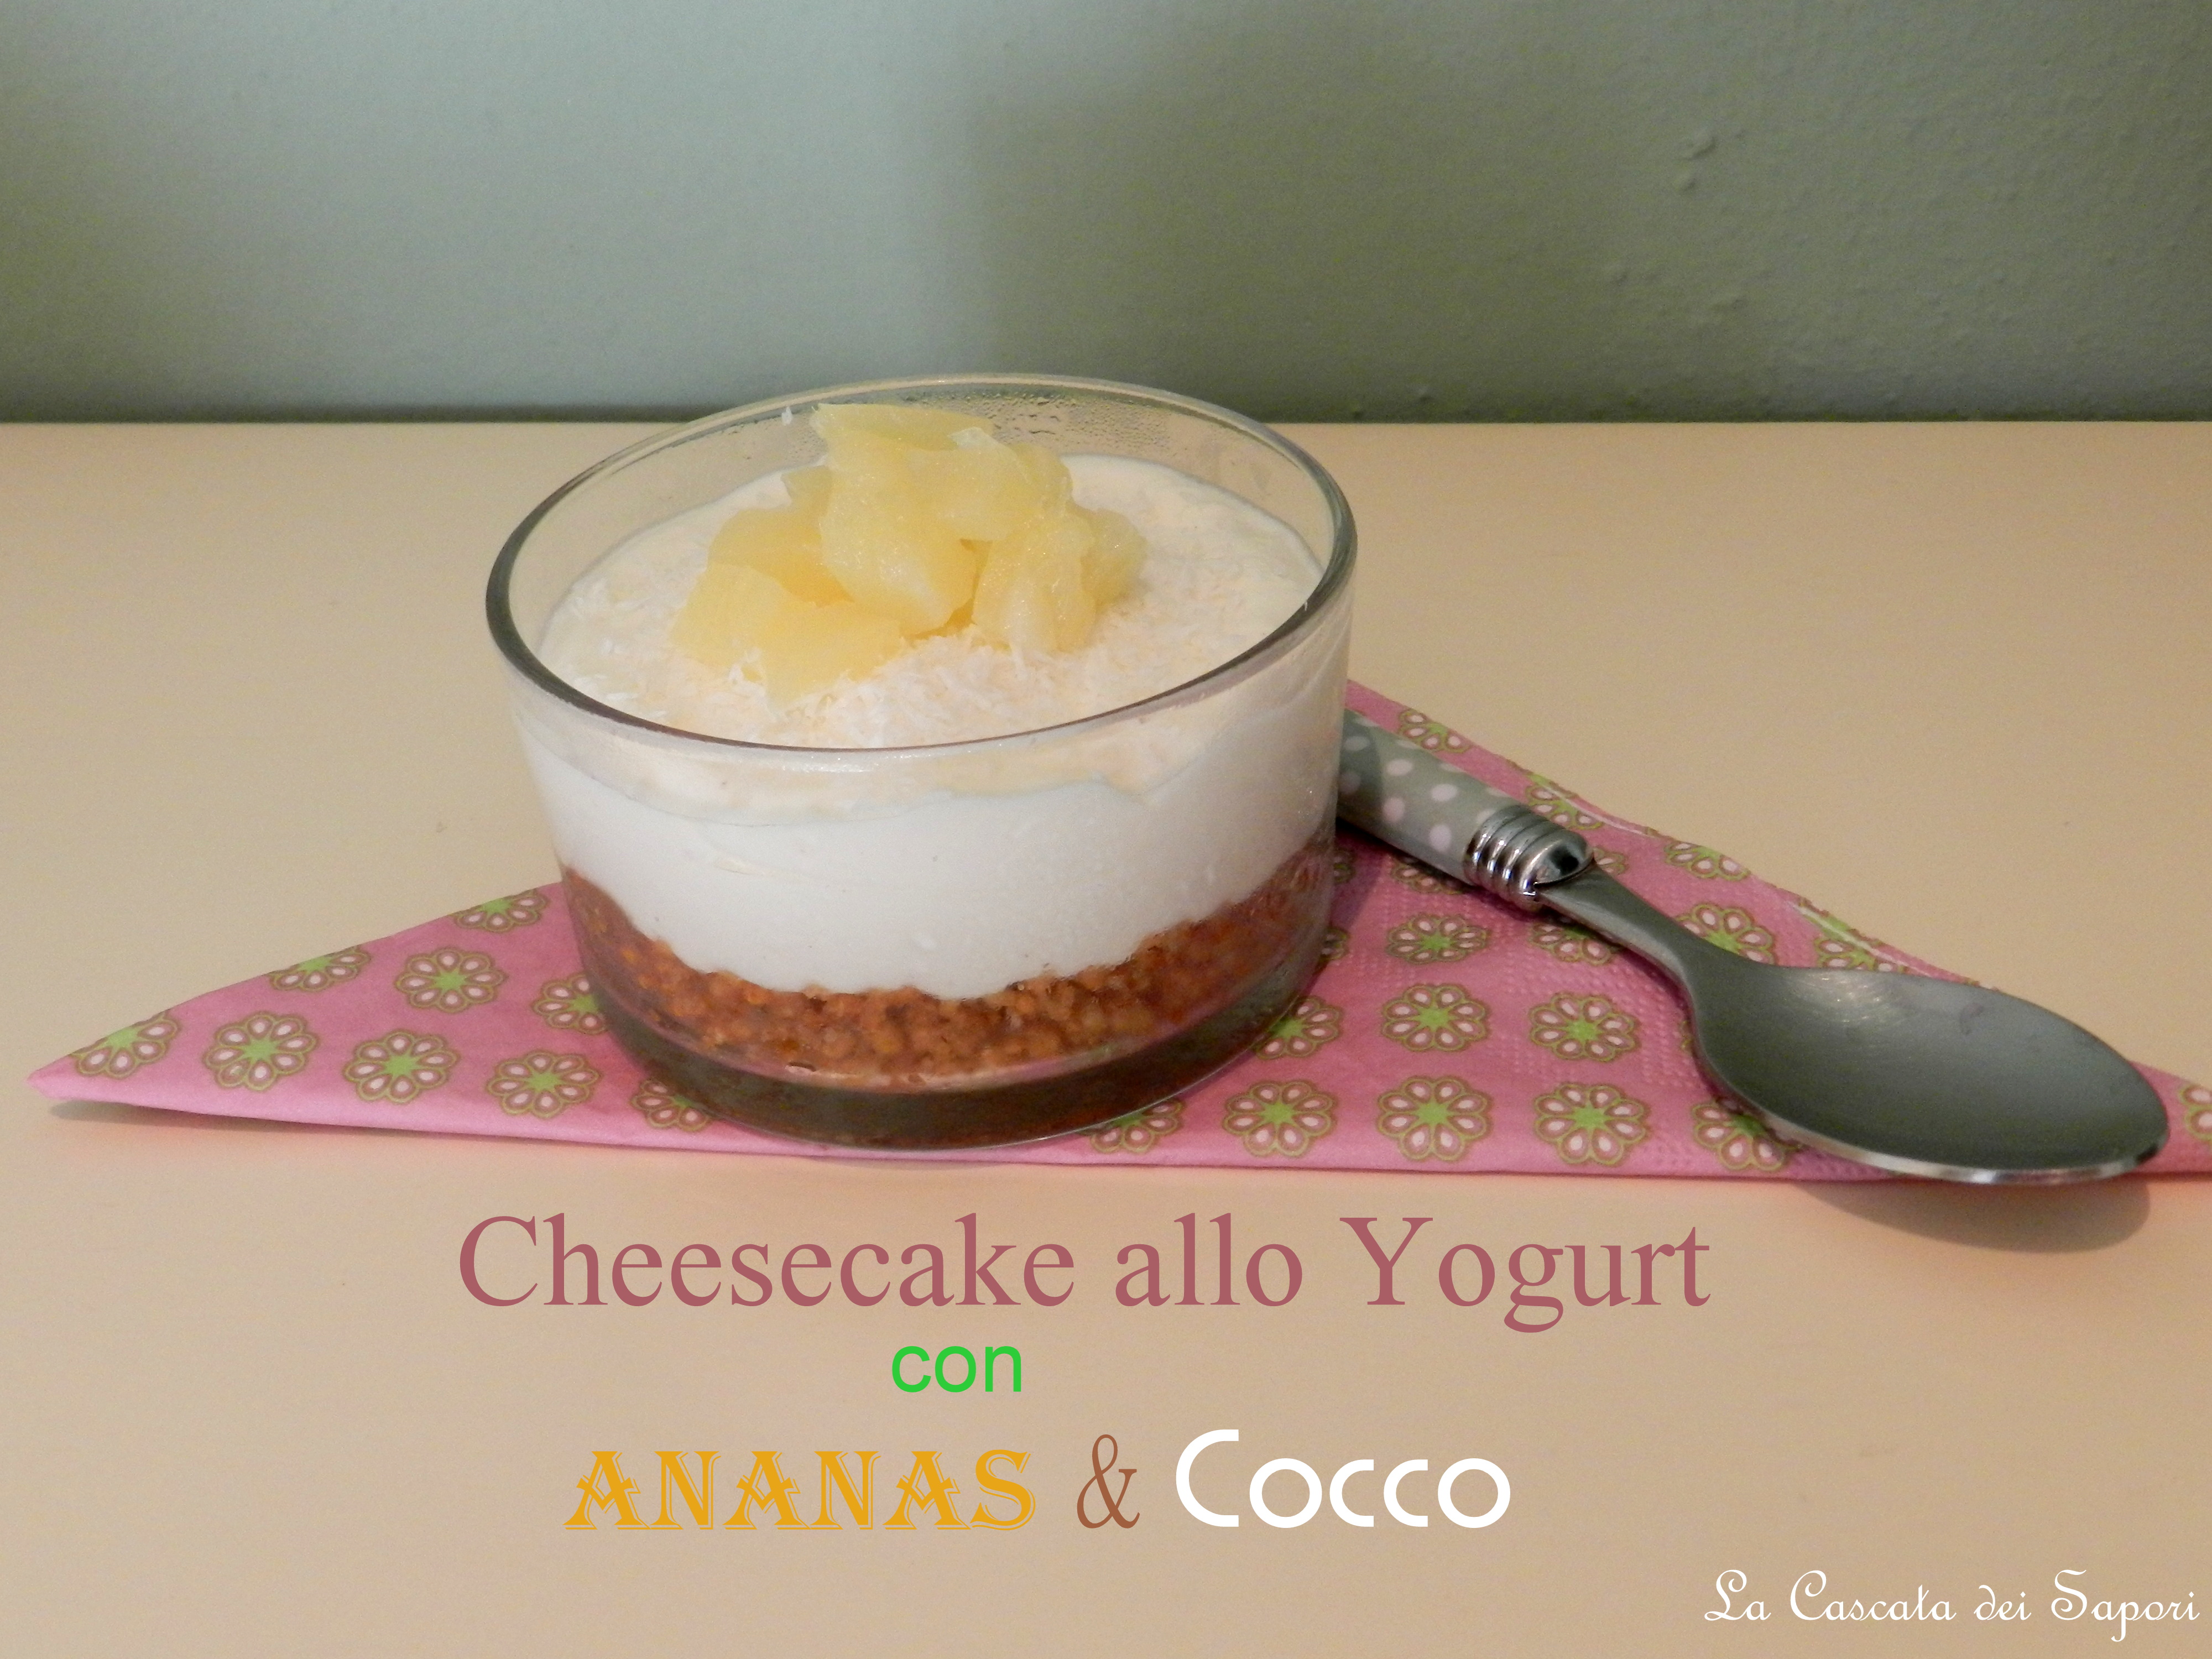 Cheesecake allo Yogurt con Ananas & Cocco